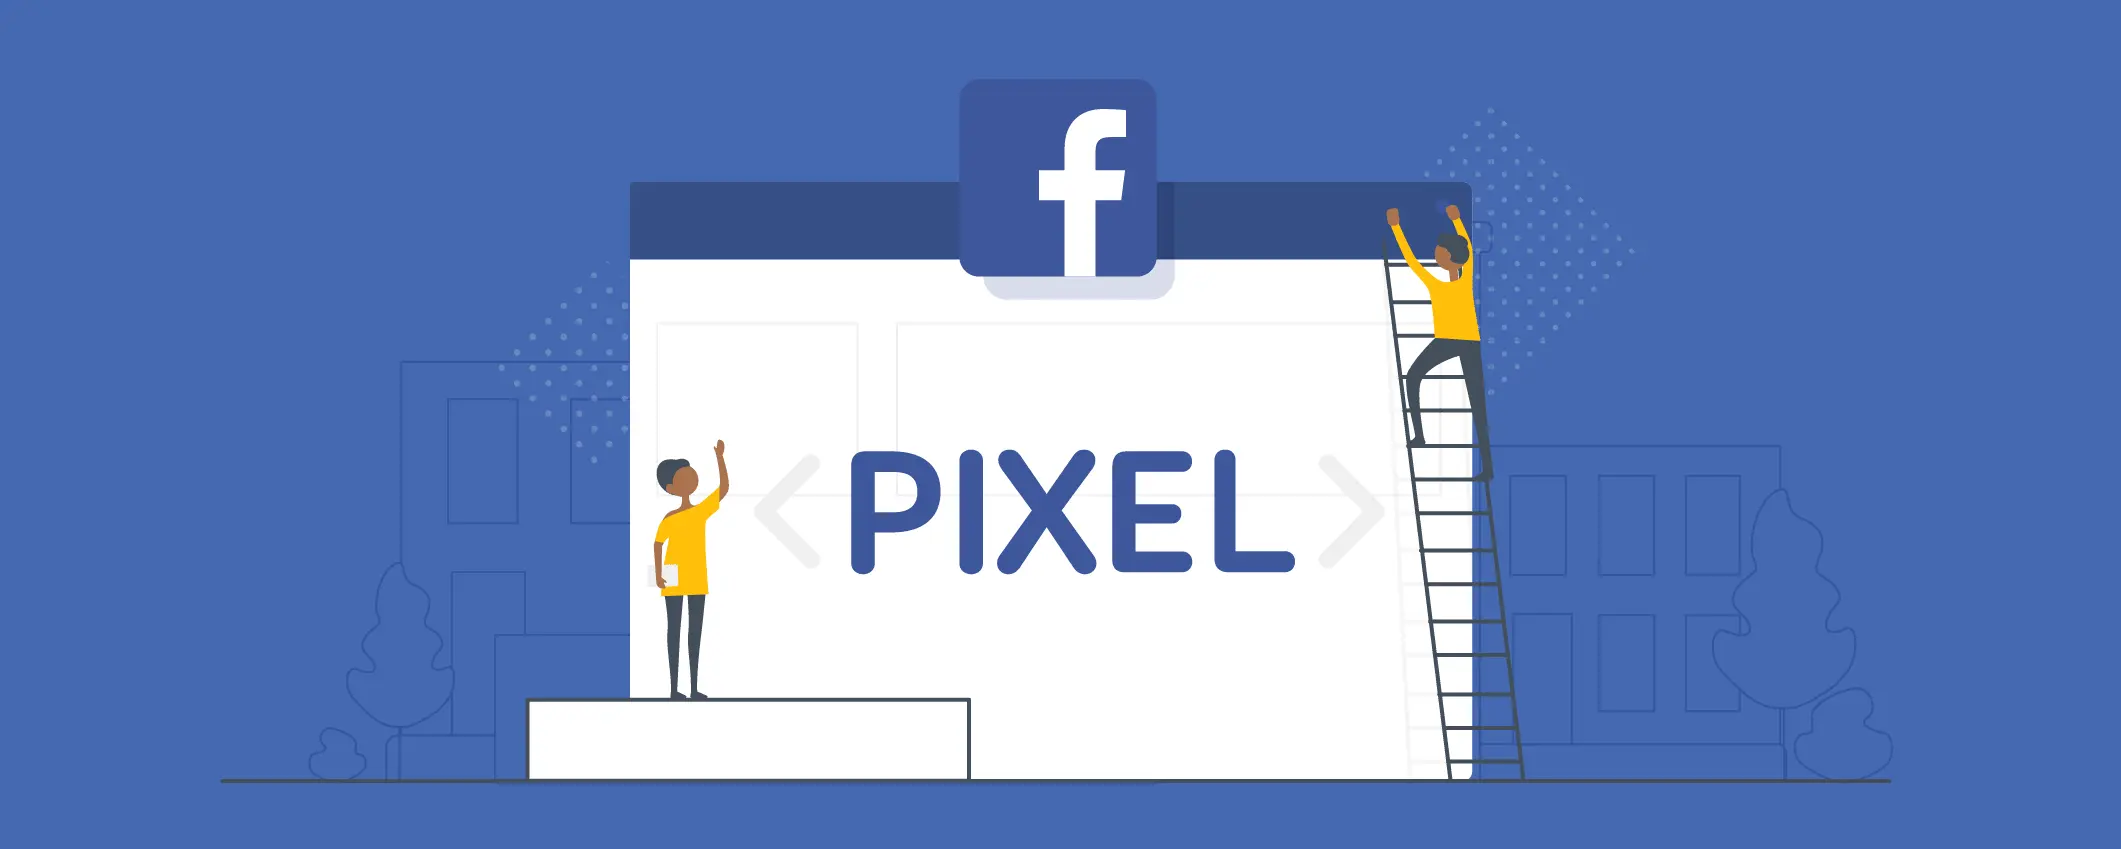 Facebook Pixel to Your WordPress Site